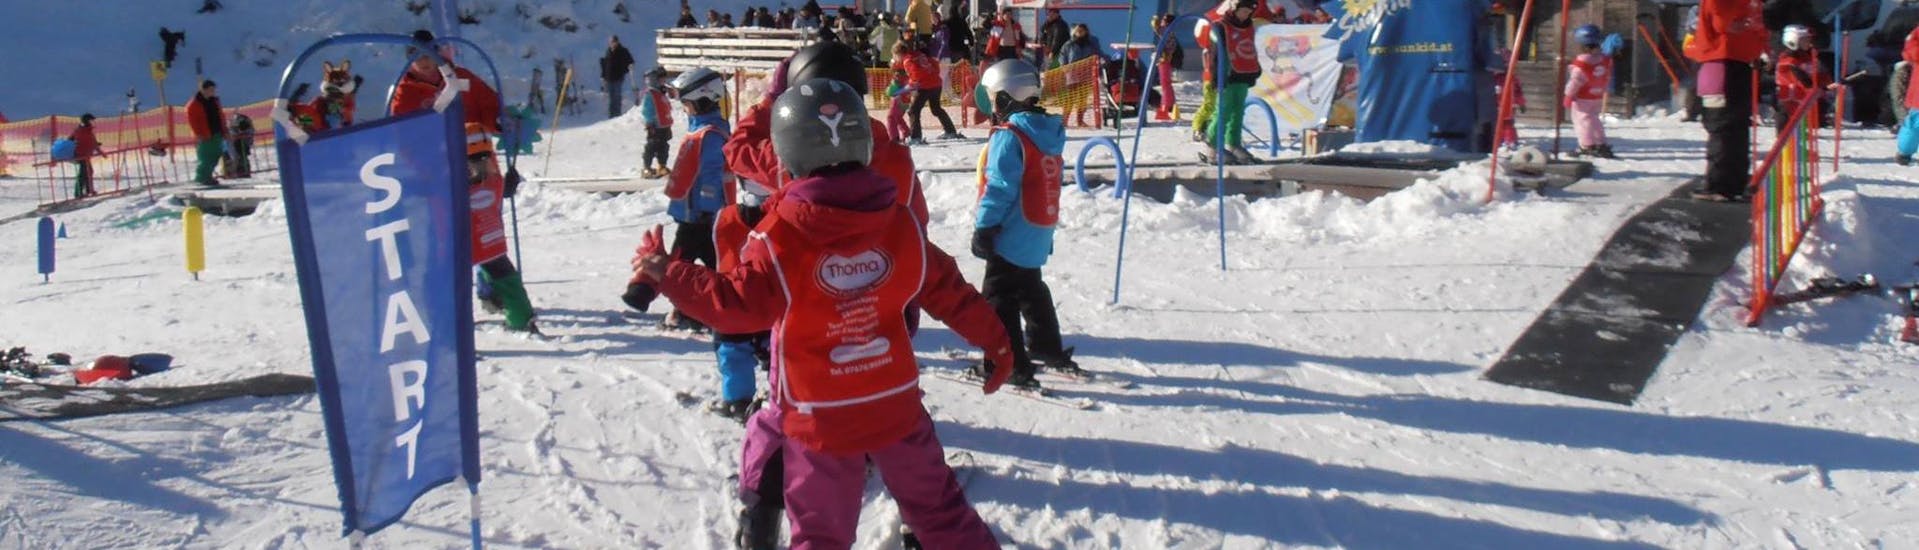 Cours de ski Enfants (4-8 ans) pour Tous niveaux.